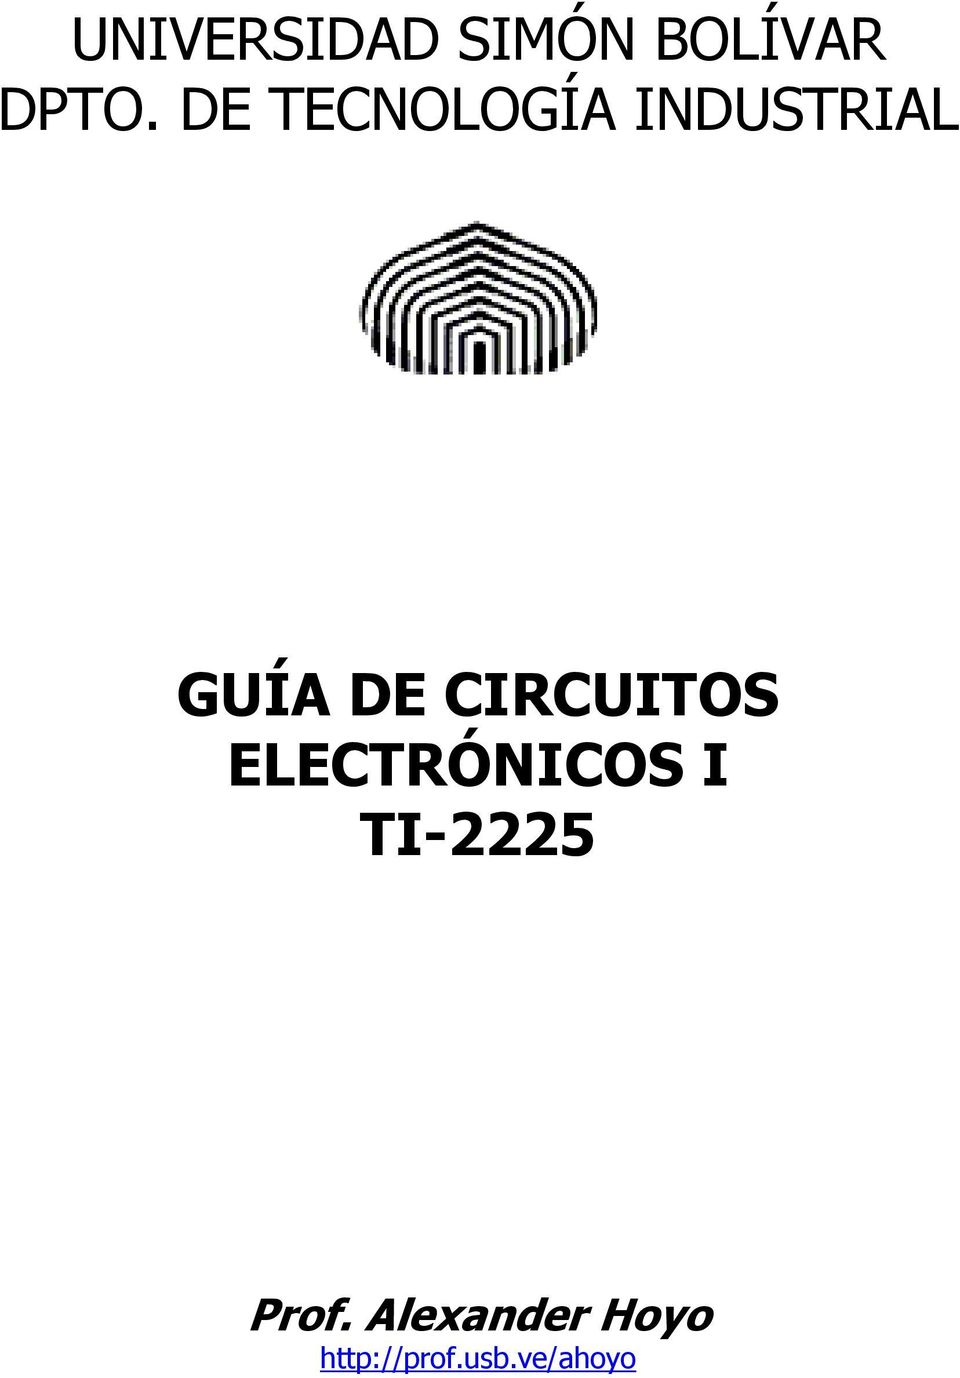 CICUITOS ELECTÓNICOS I TI-2225